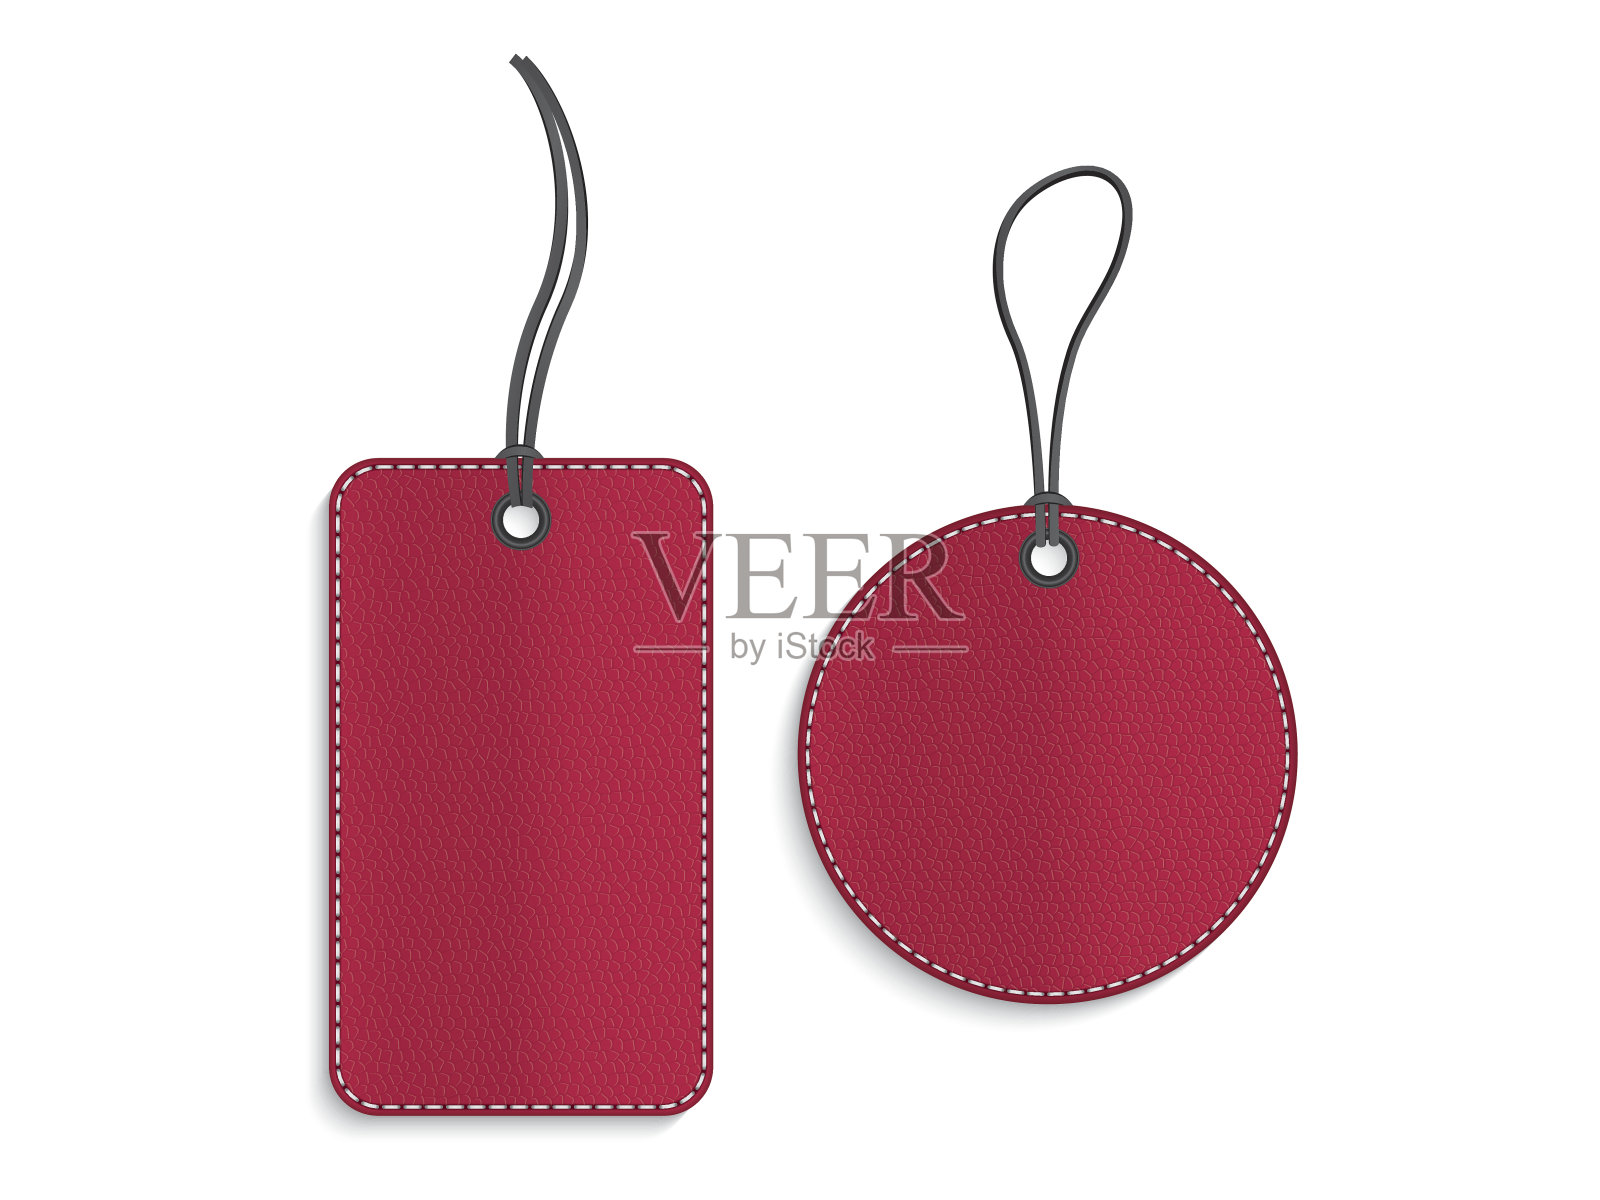 矩形和圆形红色皮革标签上的白色背景设计模板素材